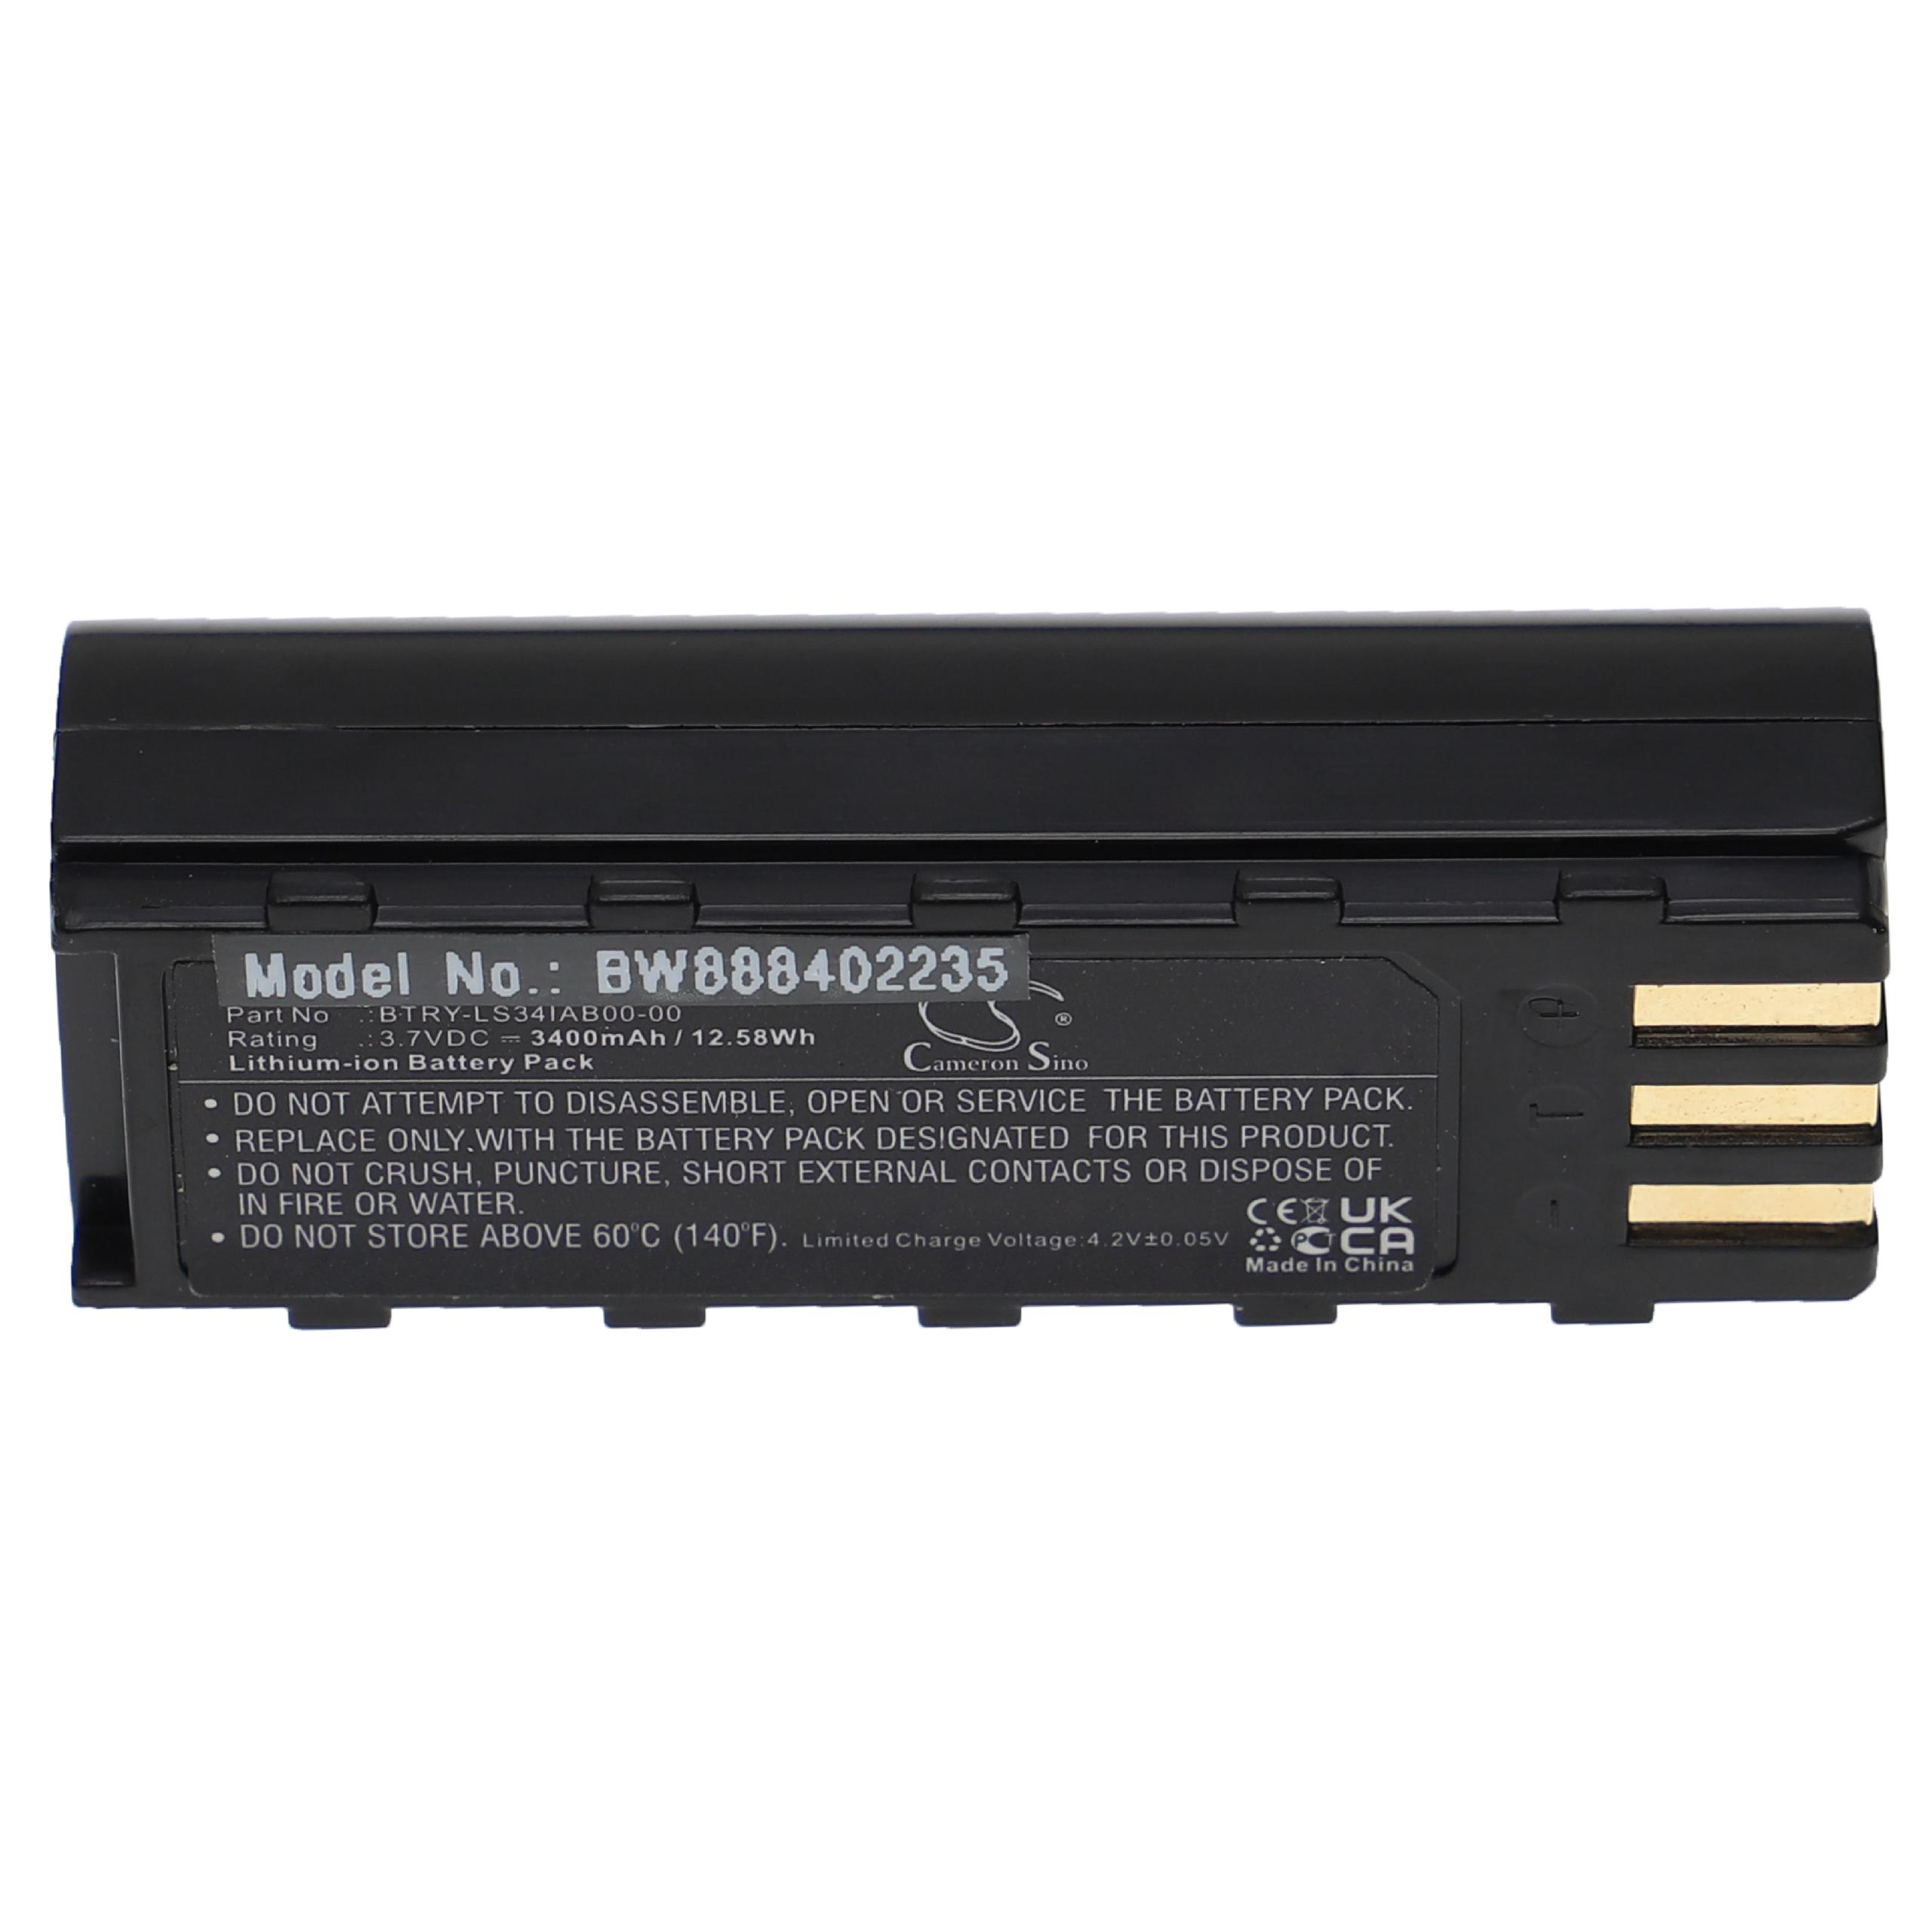 Akumulator do czytnika kodów kreskowych zamiennik Motorola 21-62606-01 - 3400 mAh 3,7 V Li-Ion